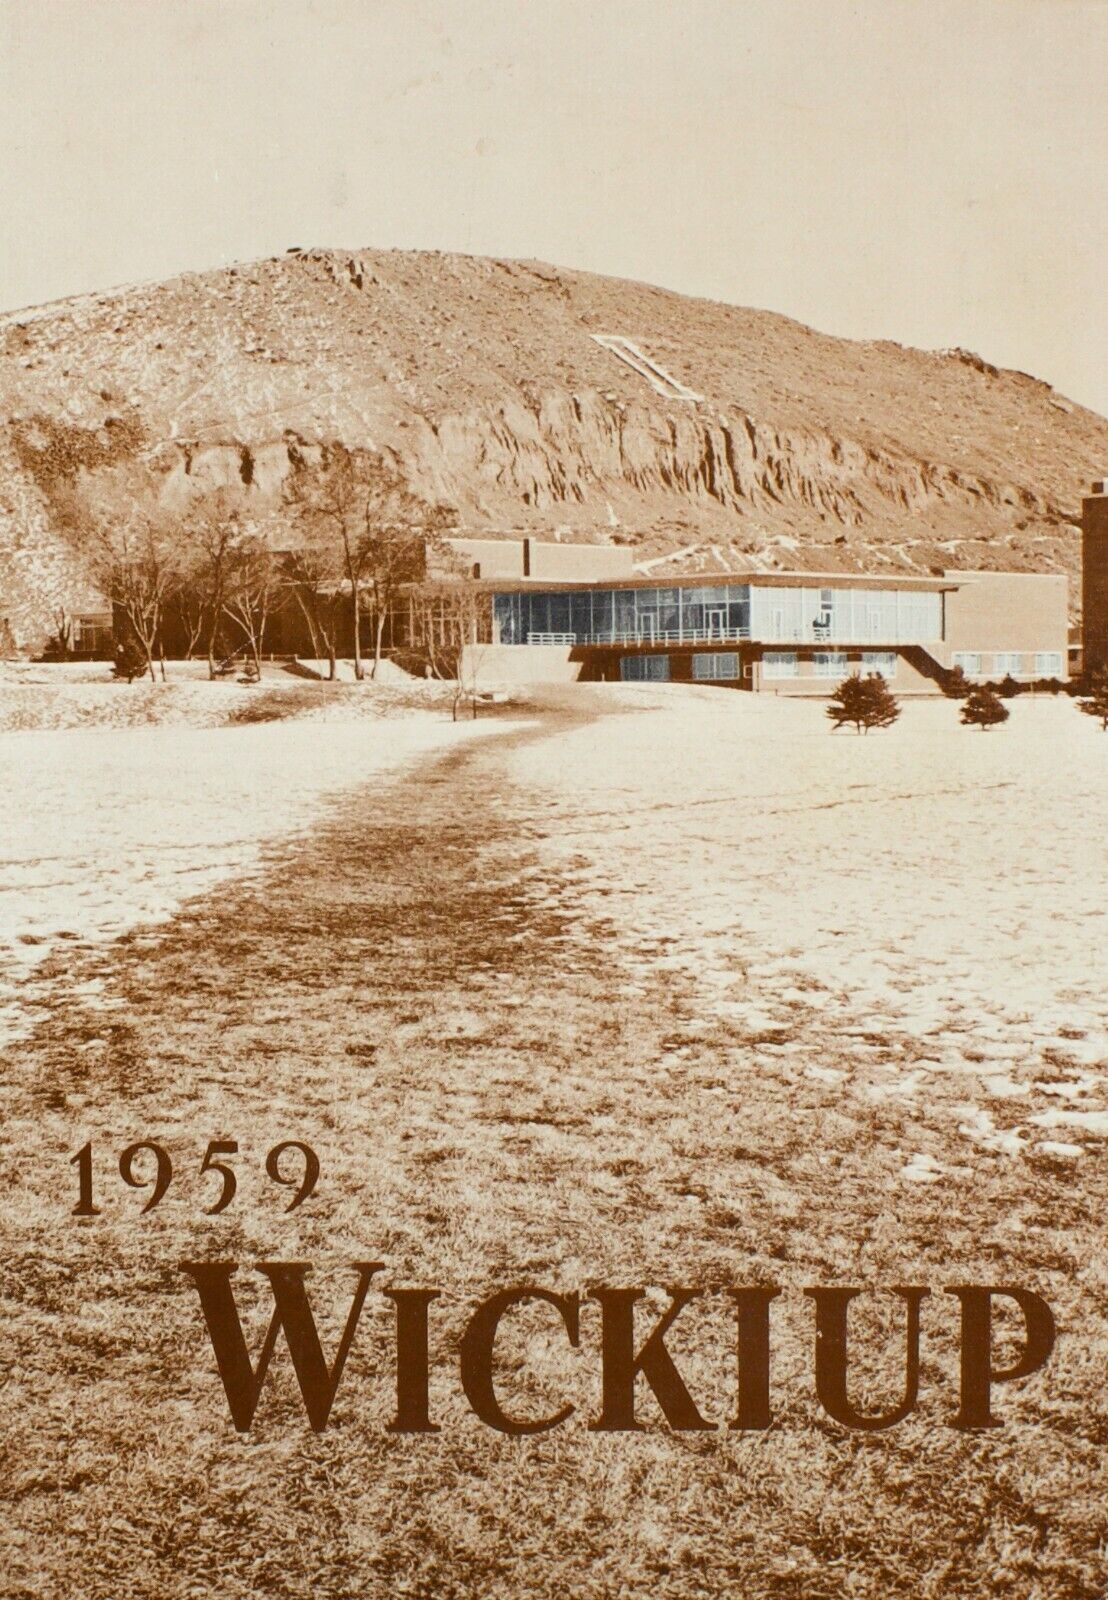 1959 Wickiup Idaho State College Pocatello Idaho Yearbook 